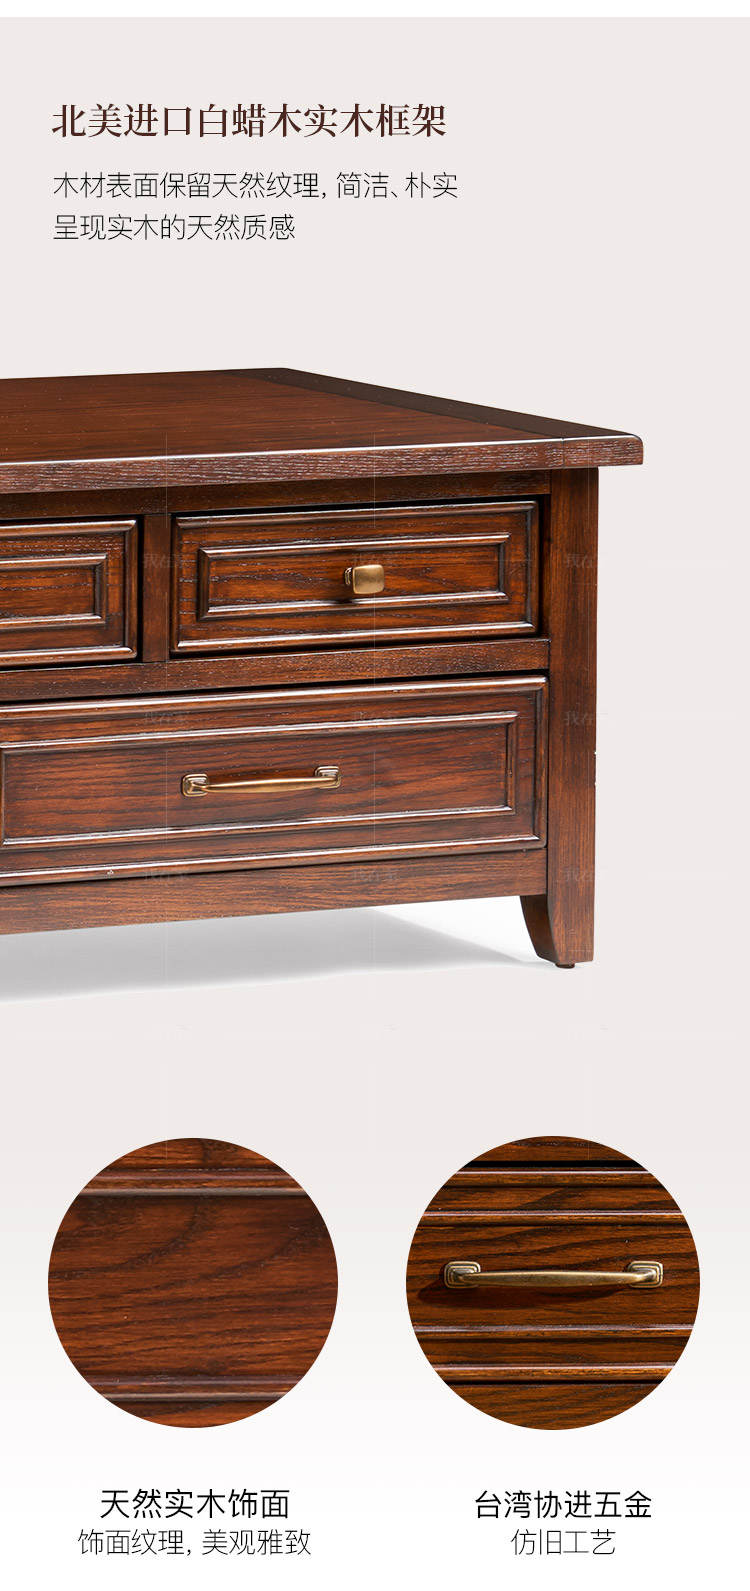 简约美式风格克莱顿咖啡桌的家具详细介绍